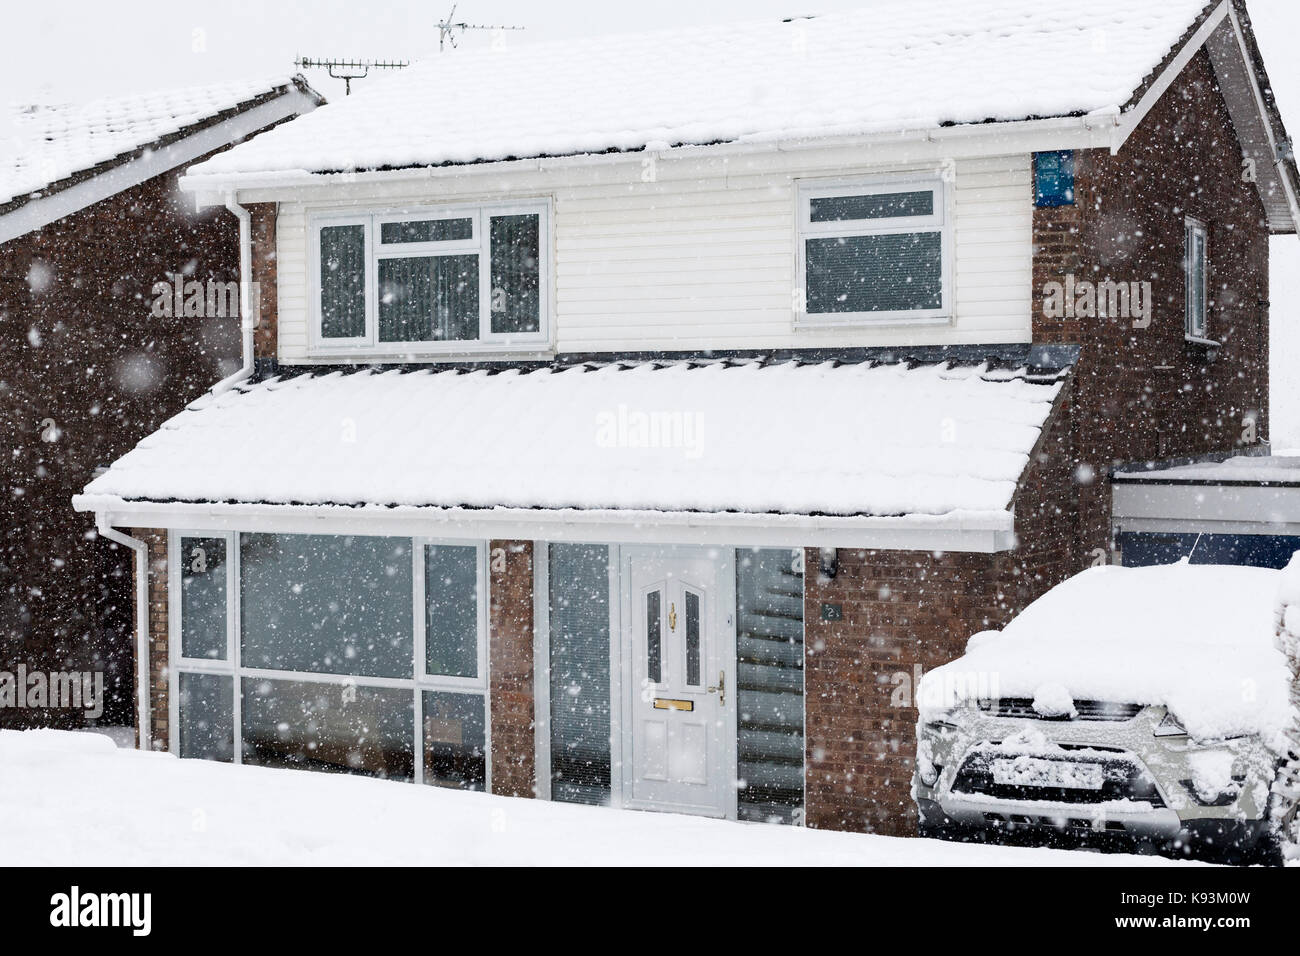 Une maison en Angleterre couvert de neige fraîchement pendant une tempête hivernale Banque D'Images